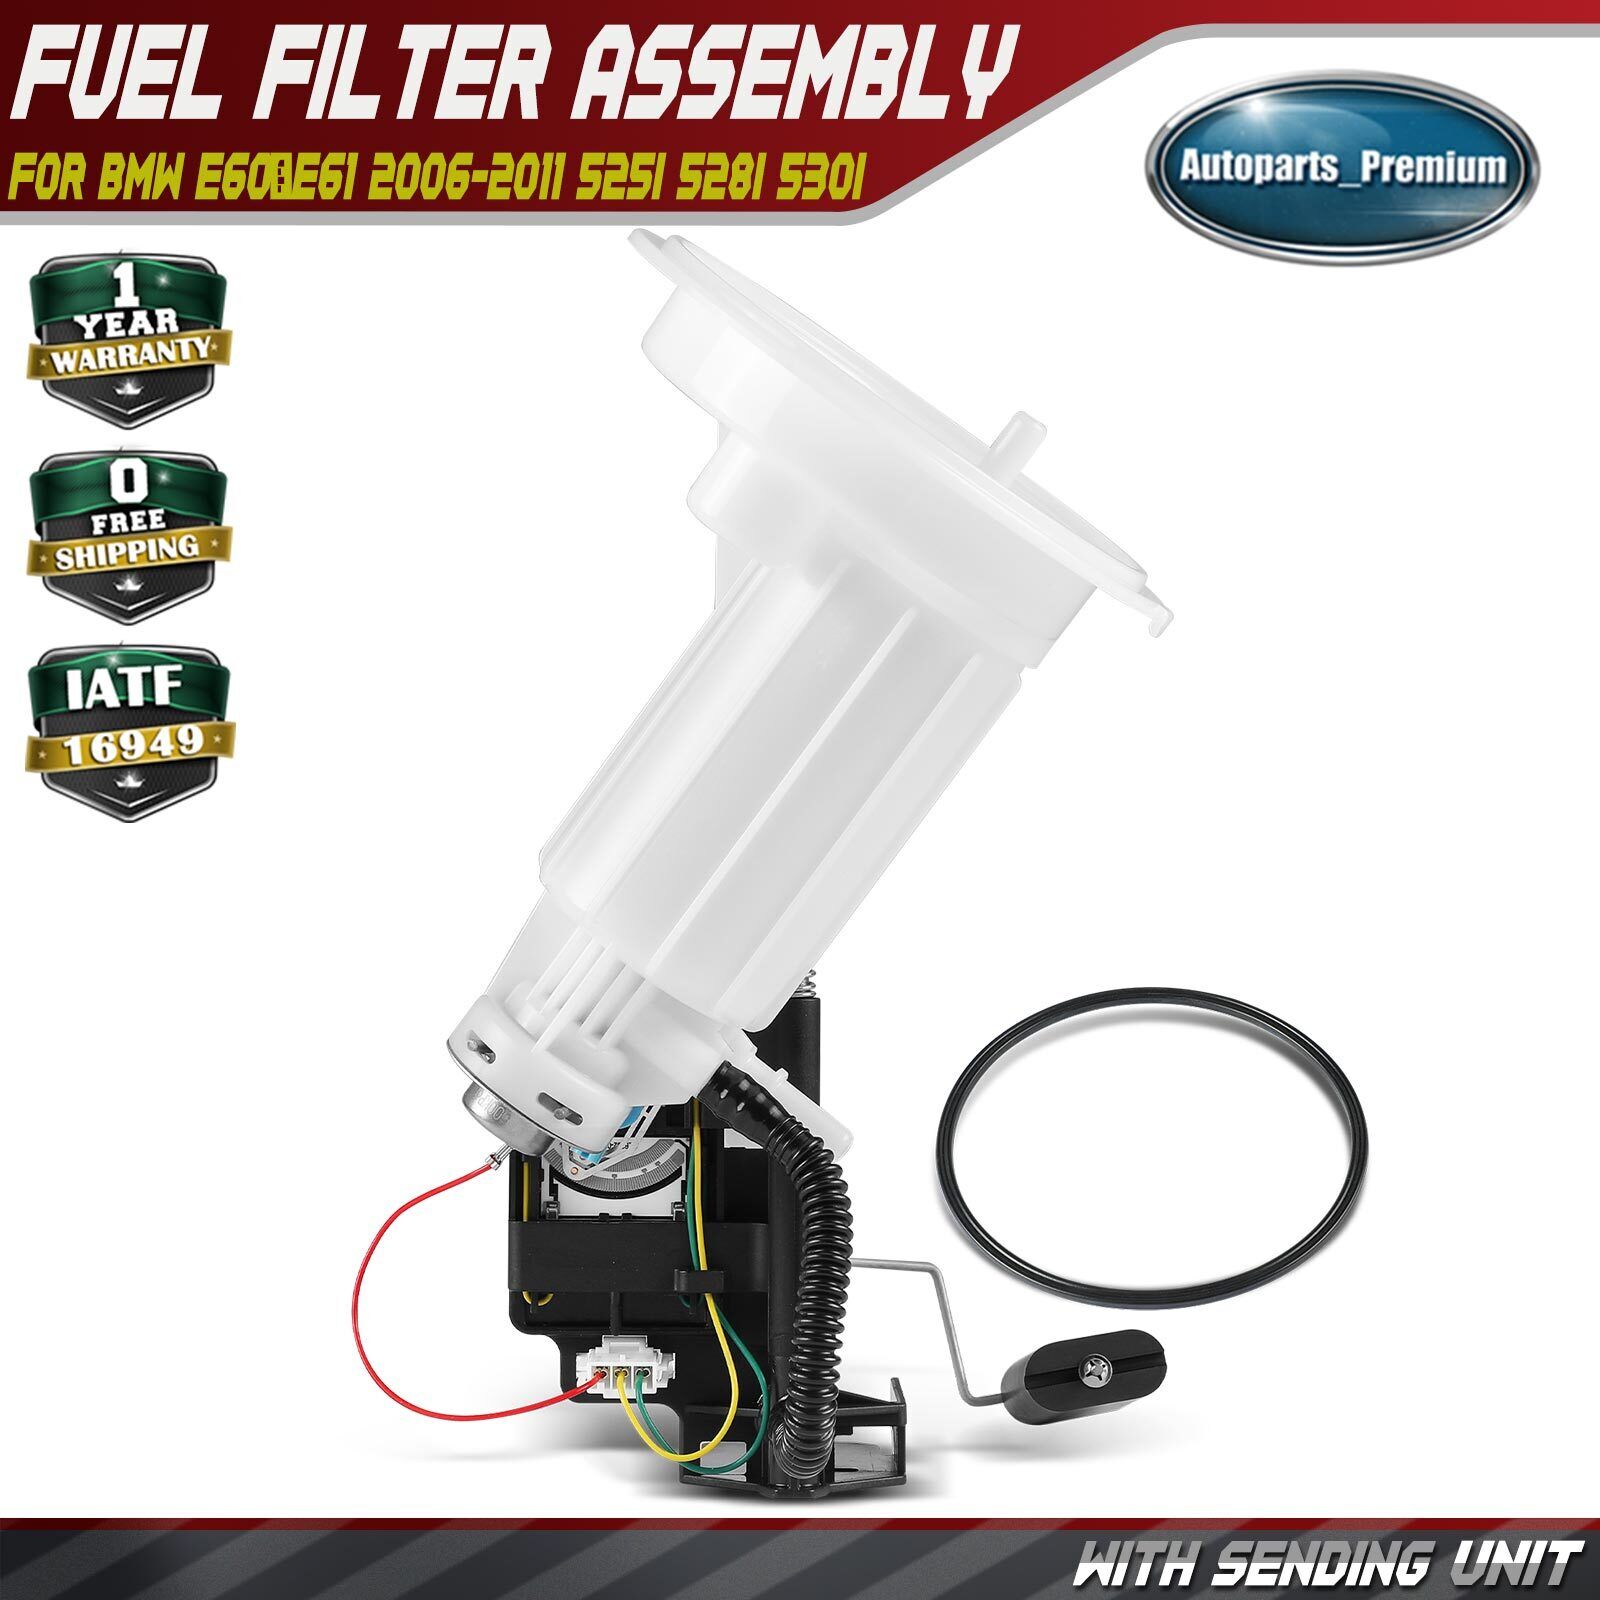 Fuel Filter w/ Sending Unit for BMW E60 E61 2006-2011 525i 528i 530i 16146766152